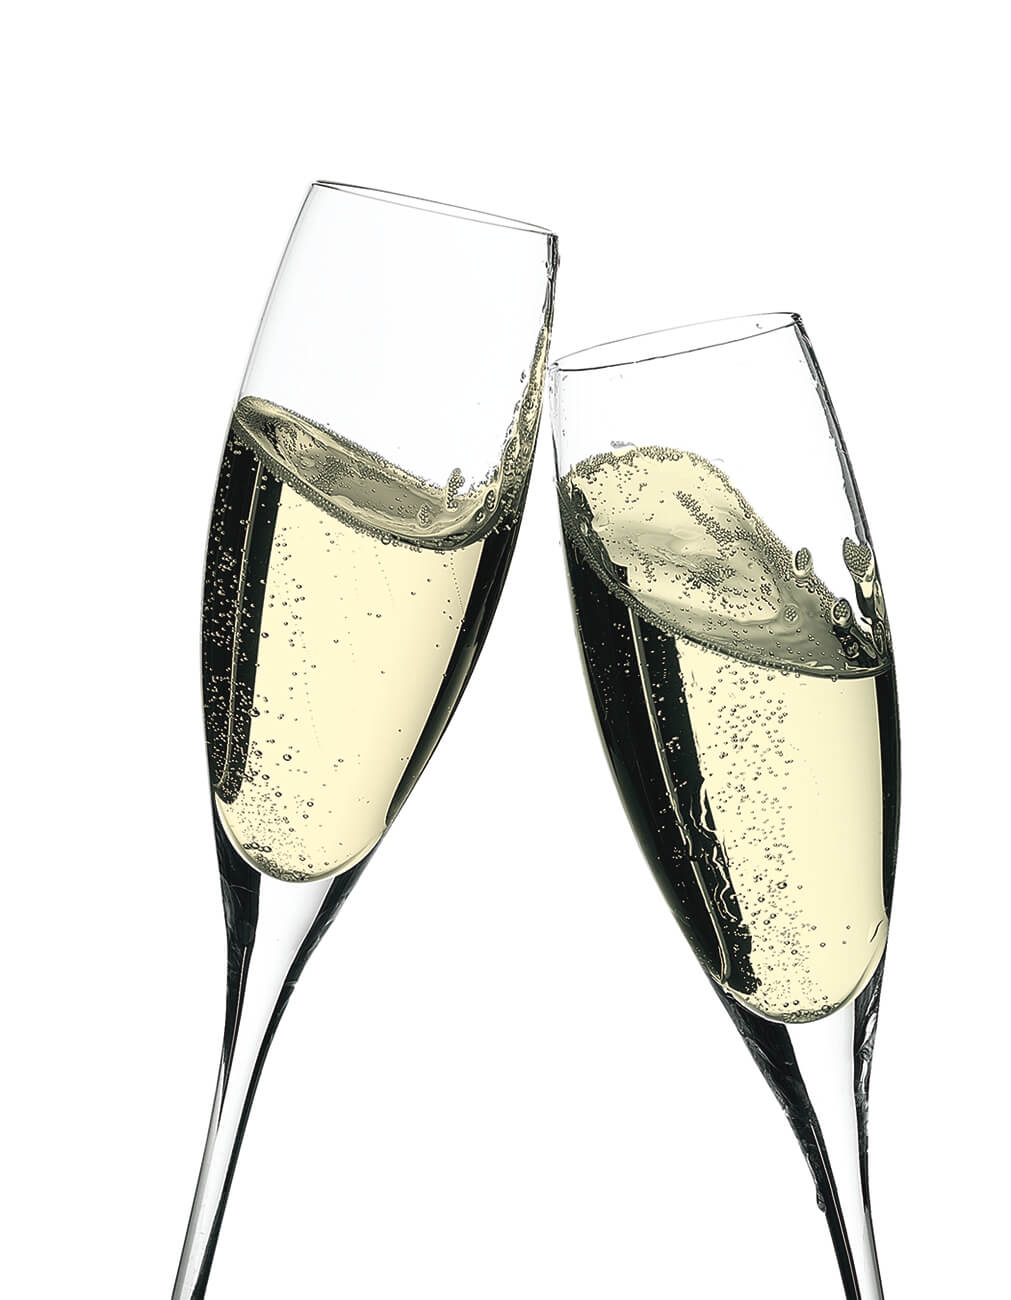 201105-Bebidas y licores. Fotografía profesional de dos copas de champán en movimiento, brindando para una felicitación  de navidad